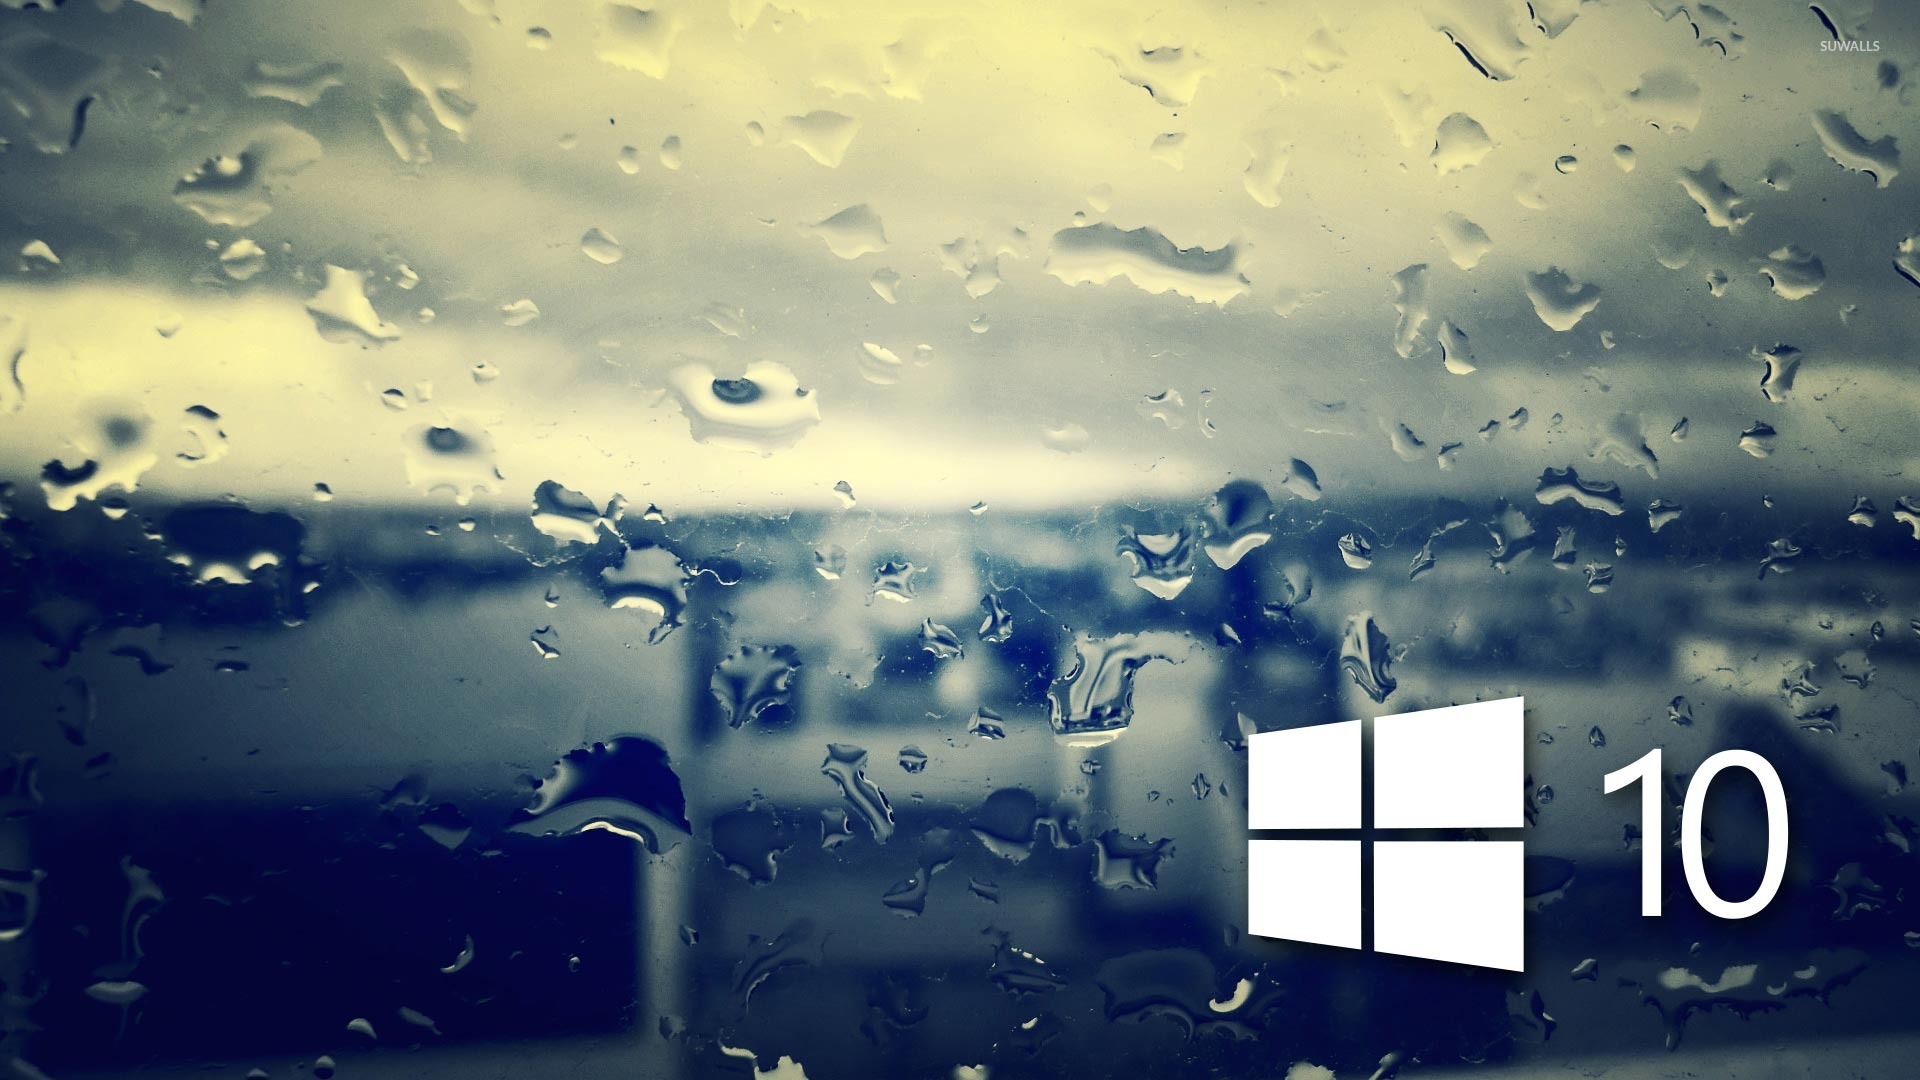 Lock Screen Windows 10 Free , HD Wallpaper & Backgrounds